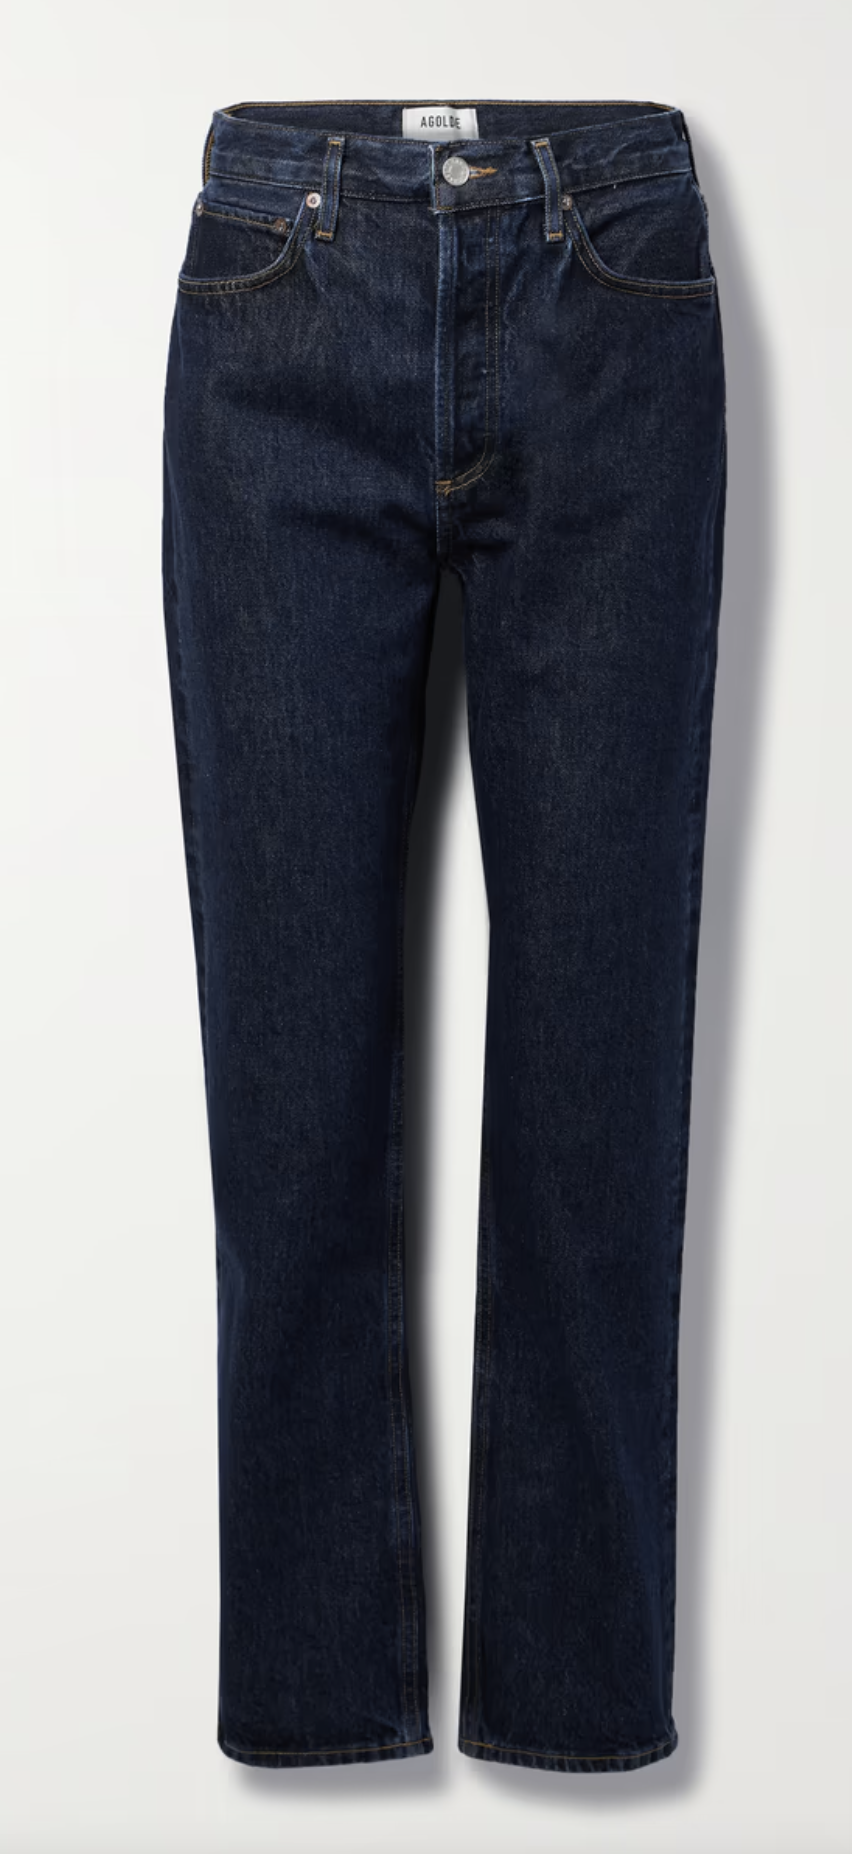 τα skinny τζιν δεν αρέσουν σε όλους, τα straight leg jeans όμως είναι η πιο διαχρονική επιλογή